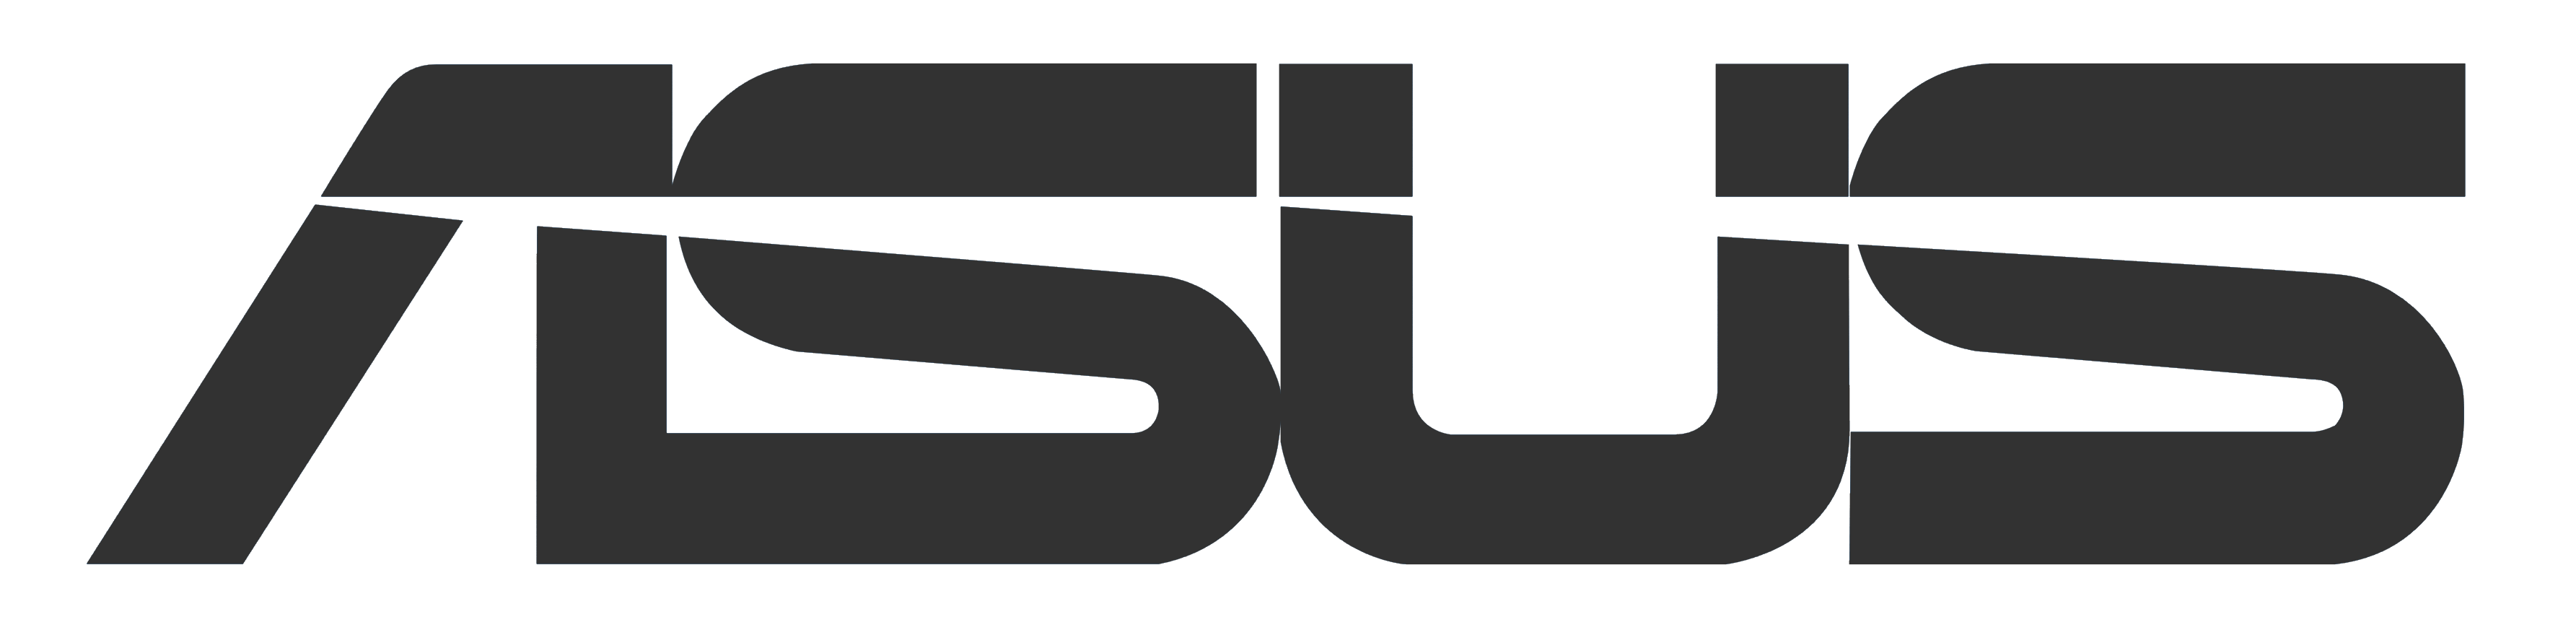 Asus OEM Logo - Logo Asus Png - Free Transparent PNG Logos